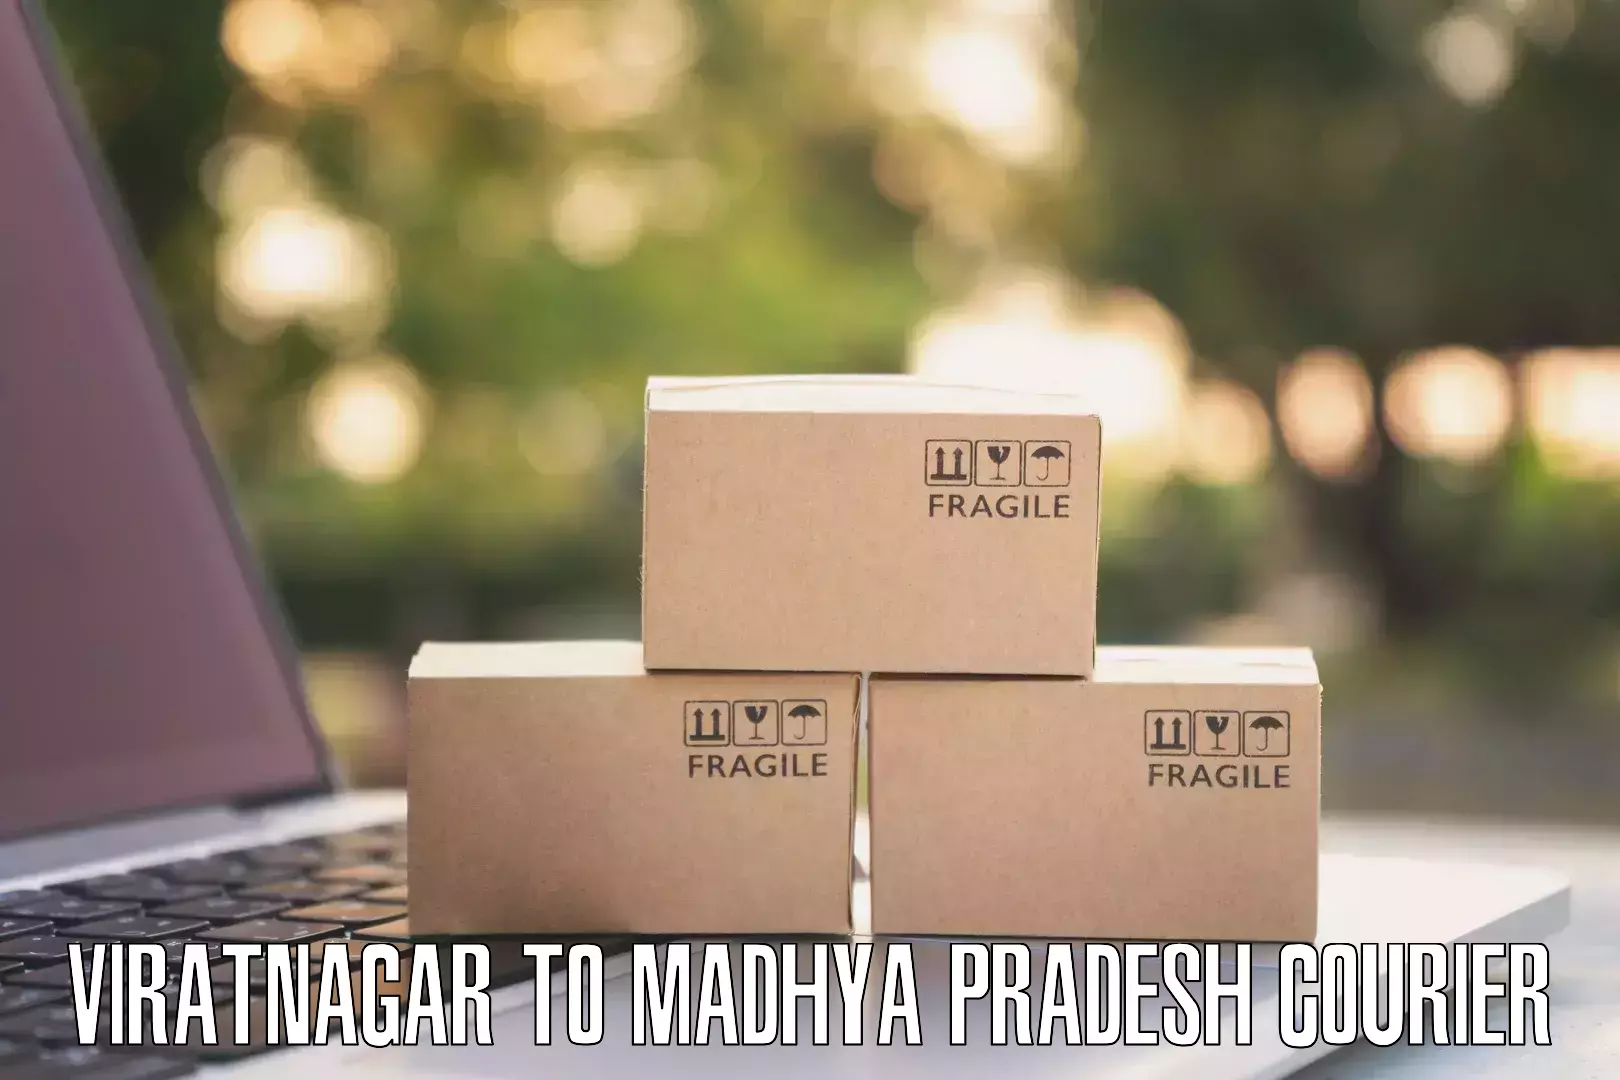 Versatile courier offerings Viratnagar to Khirkiya